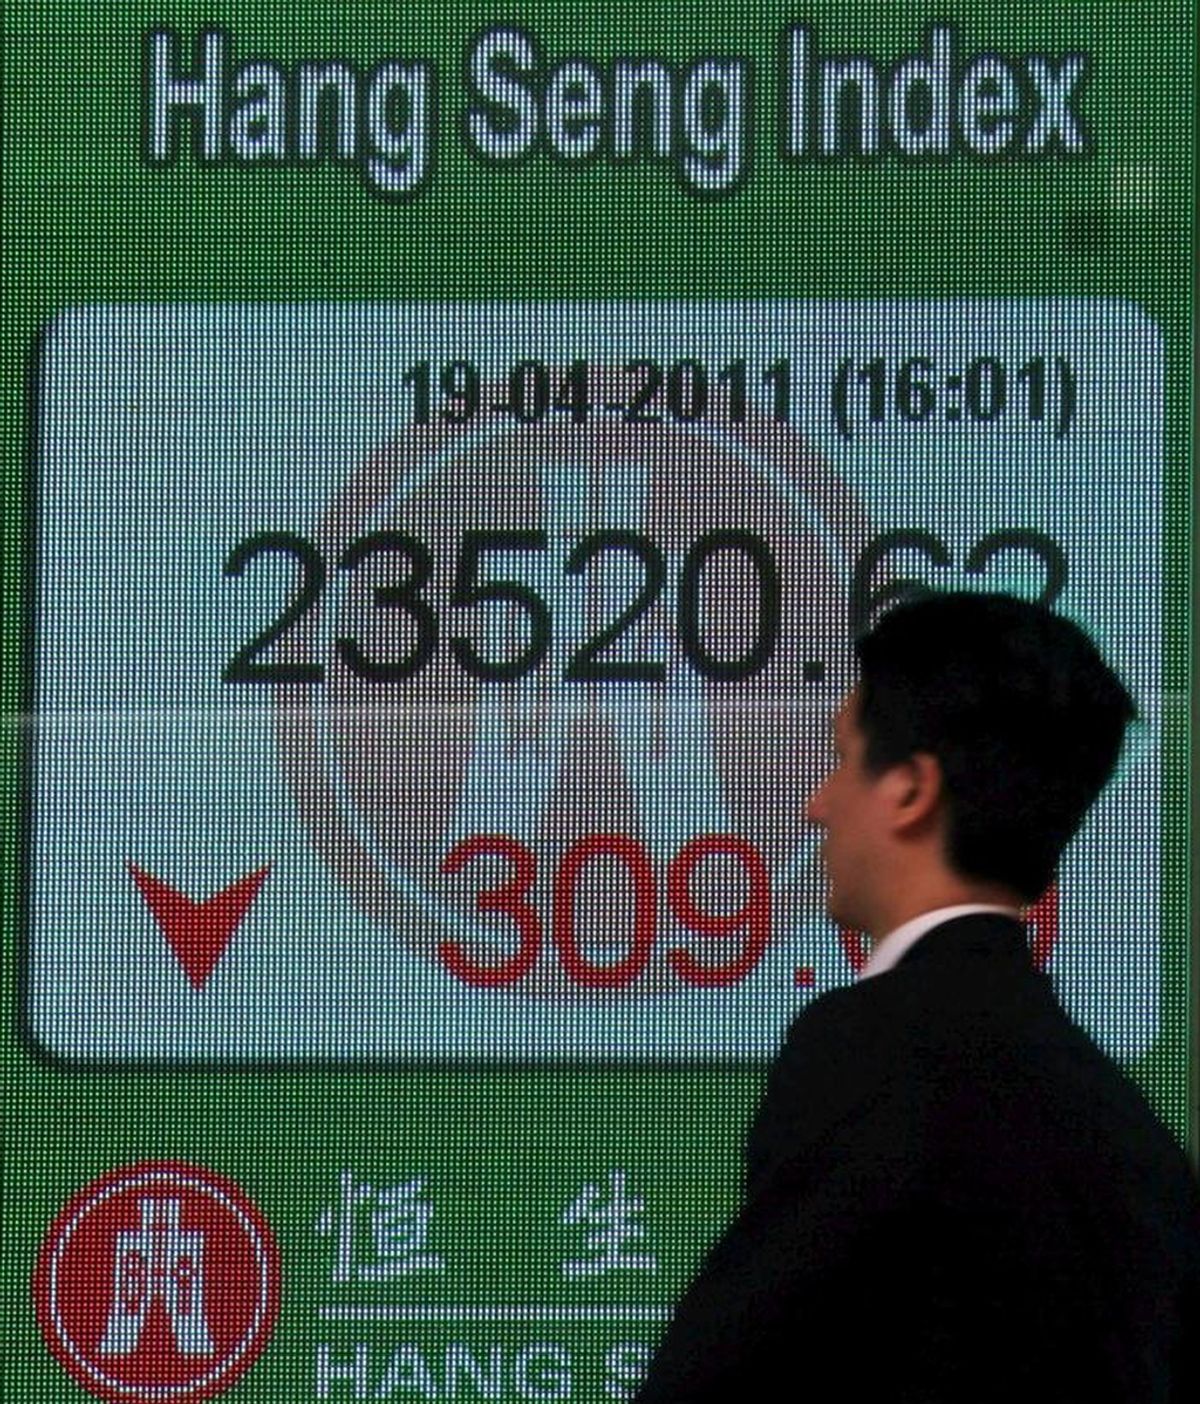 Un hombre pasa delante de un panel electrónico que muestra el valor alcanzado por el índice Hang Seng de la Bolsa de Hong Kong. EFE/Archivo